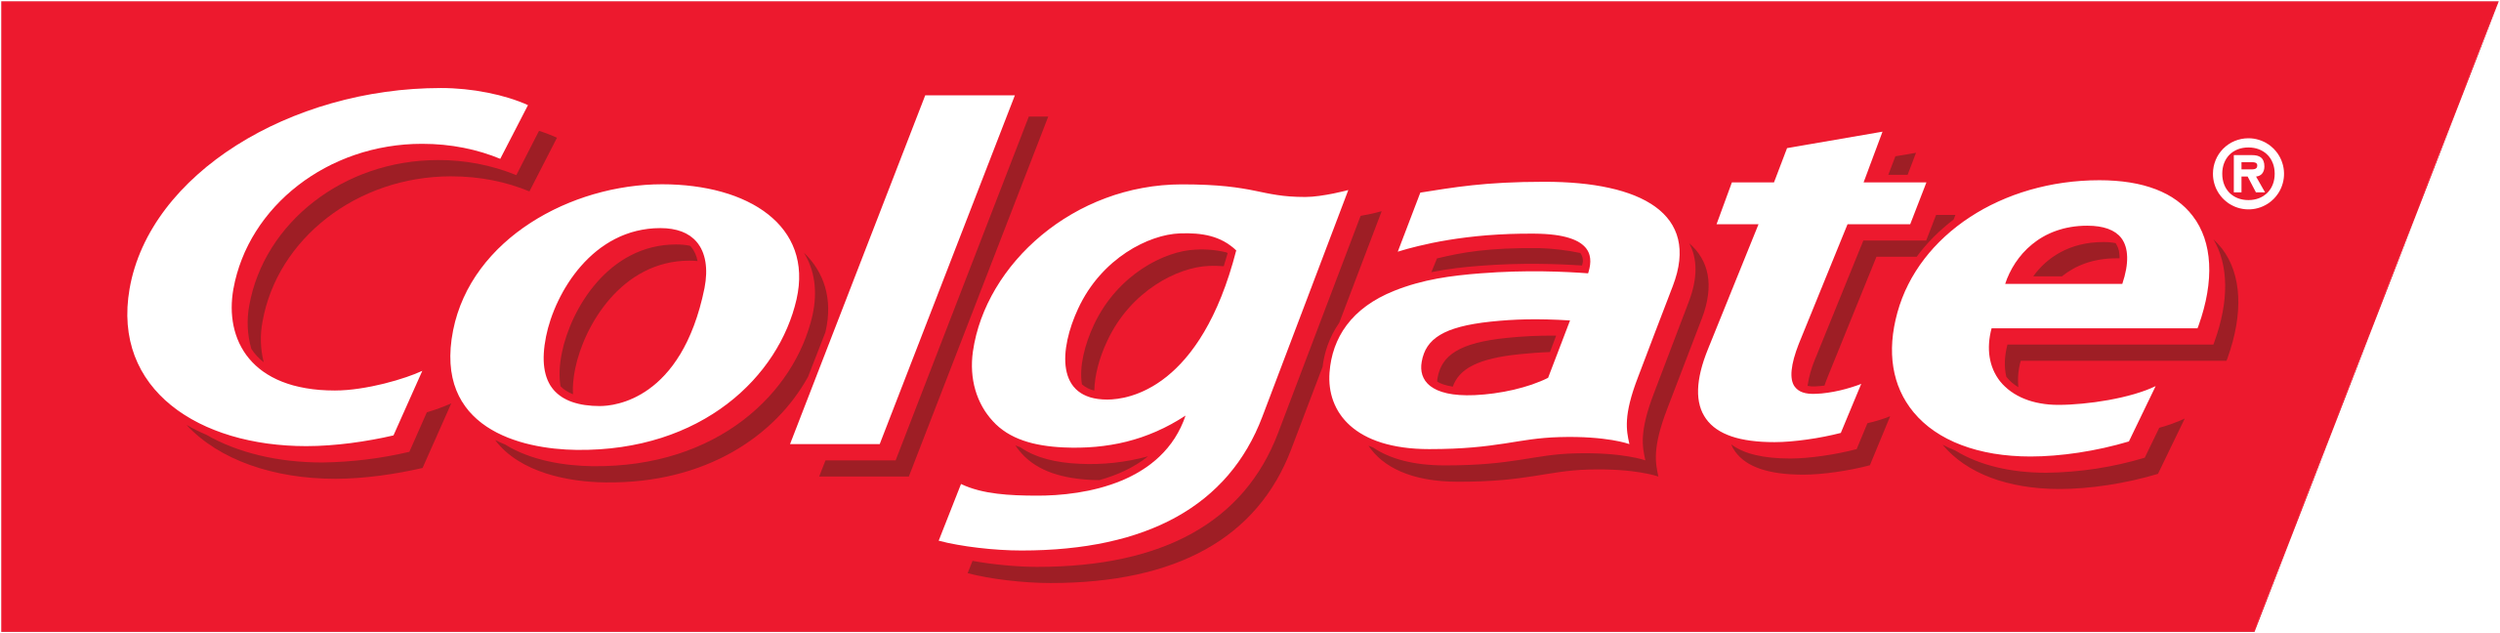 Colgate_logo.png